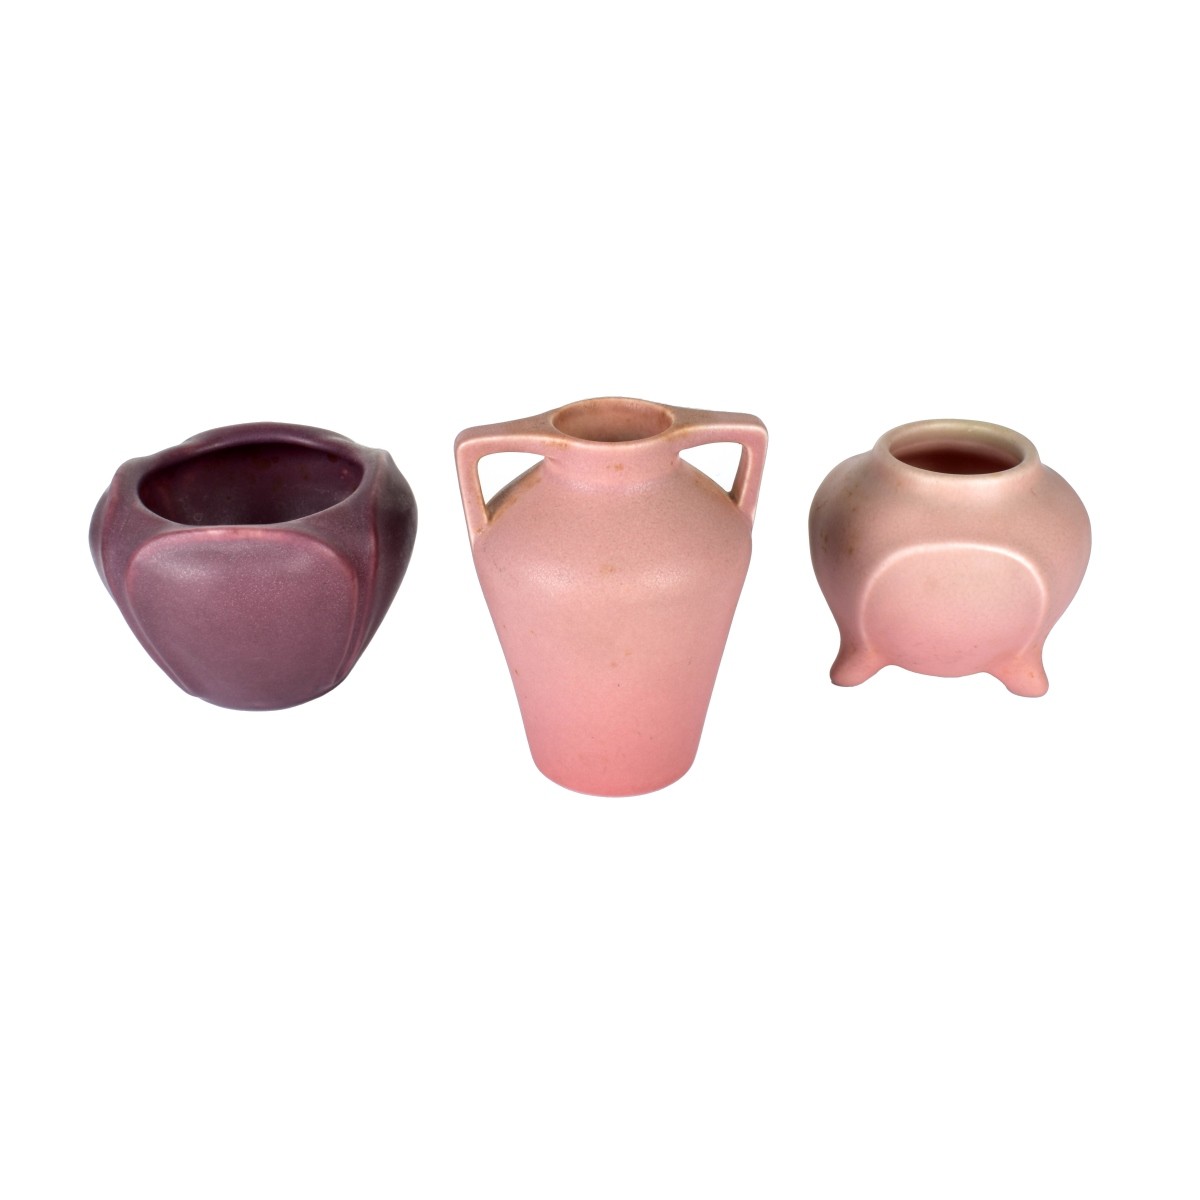 Three Rookwood Pottery Vases